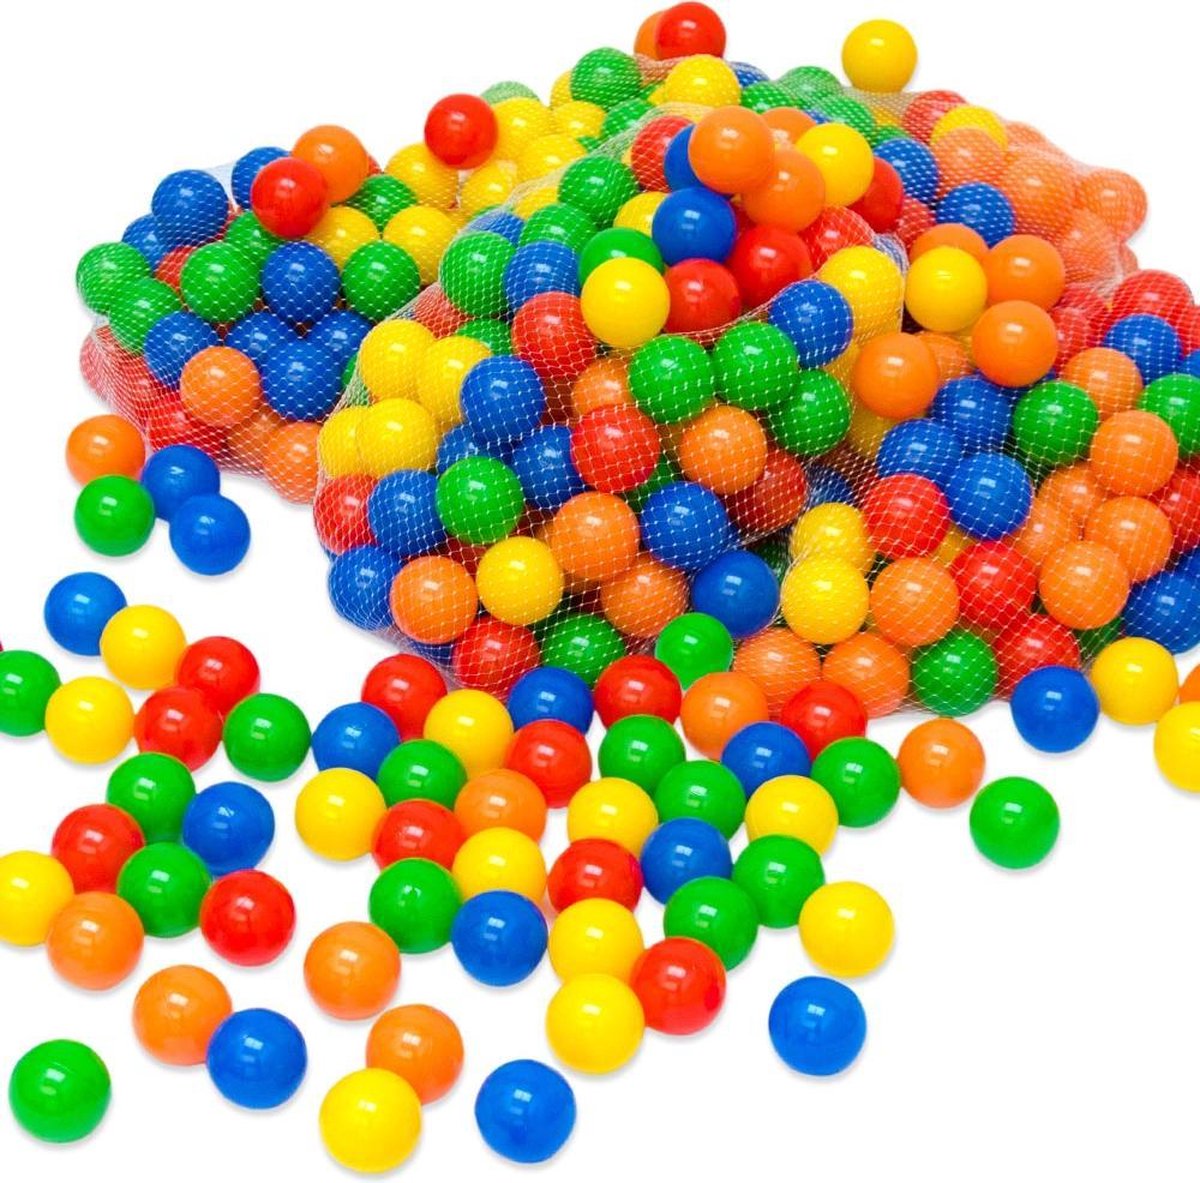 10000 kleurige ballen voor ballenbad 5,5cm baby ballen plastic ballen baby speelballen